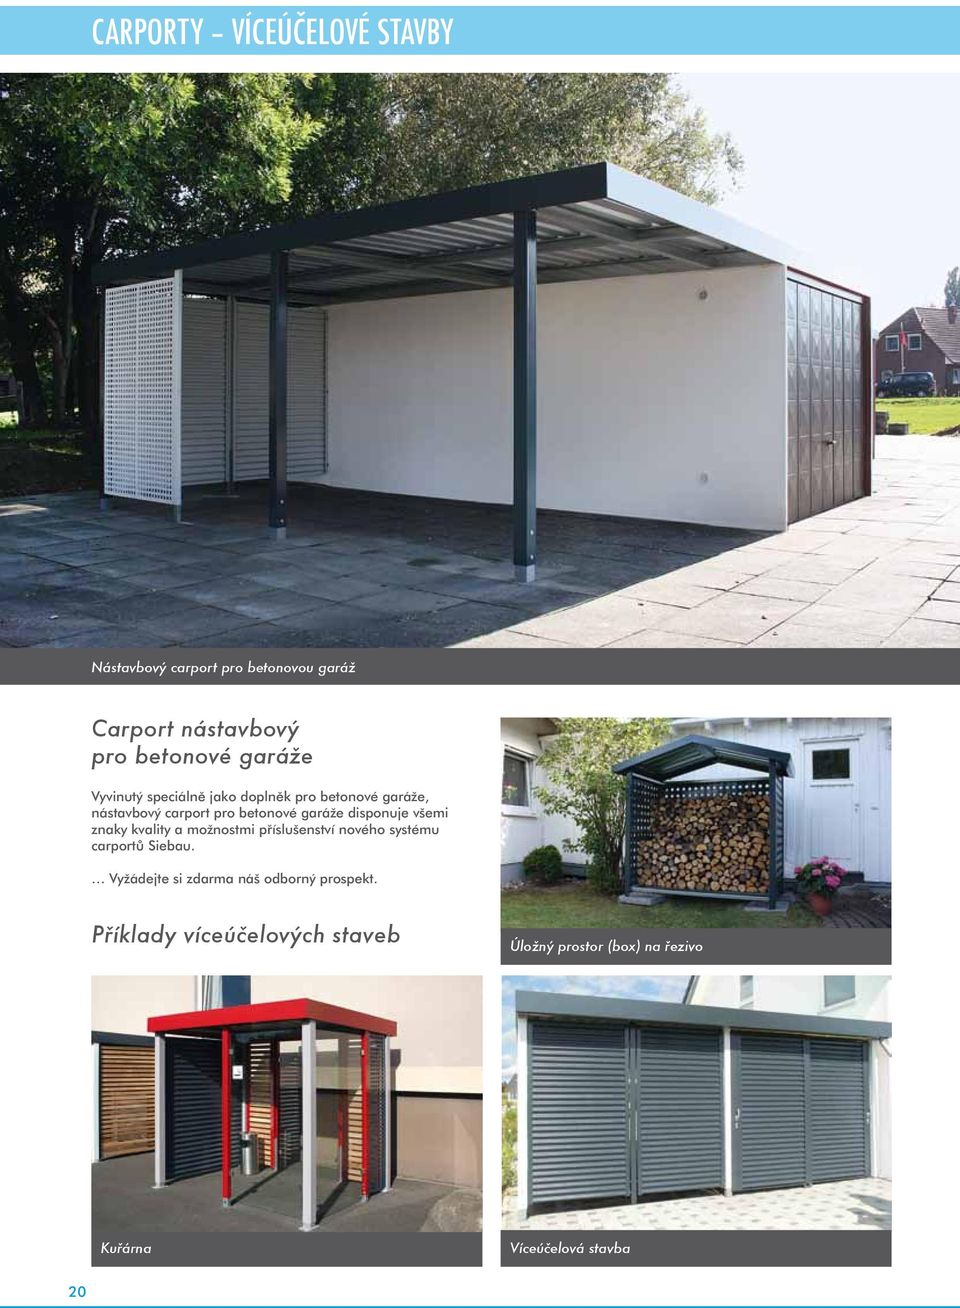 betonové garáže disponuje všemi znaky kvality a možnostmi příslušenství nového systému carportů Siebau.